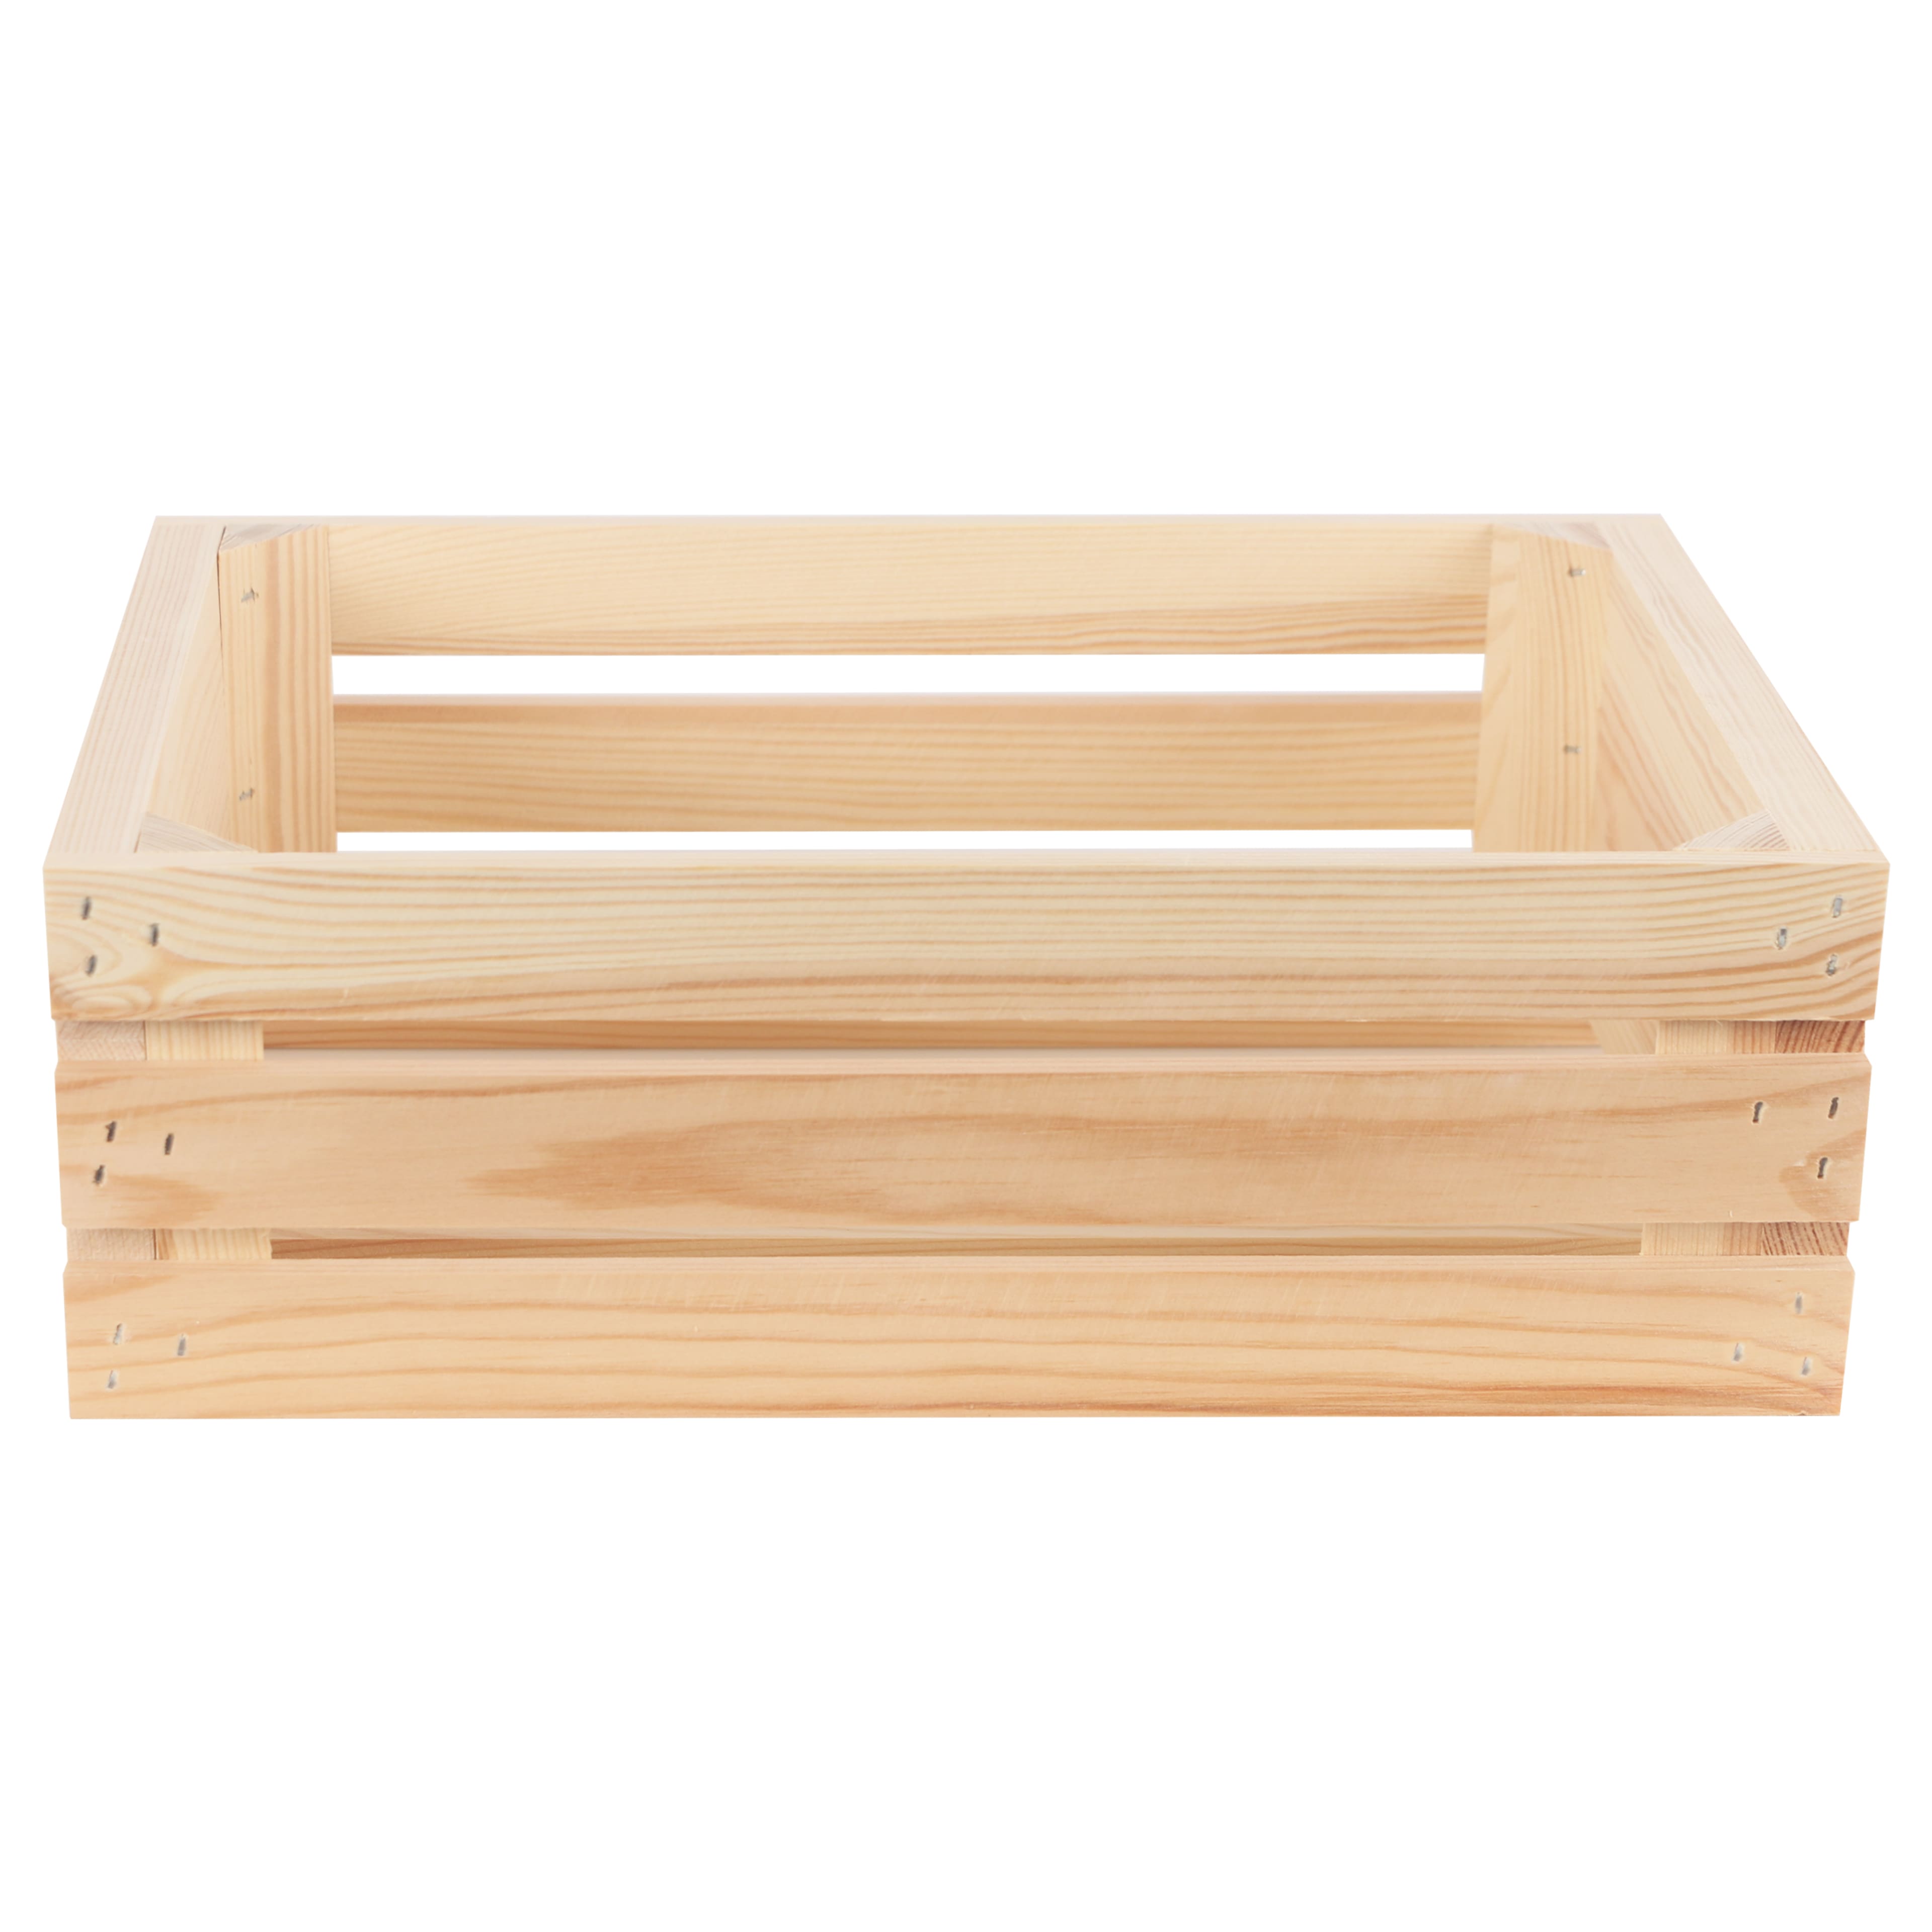 Smaller Wooden Trinket & Favour Boxes - Plain Wooden Boxes & Crates